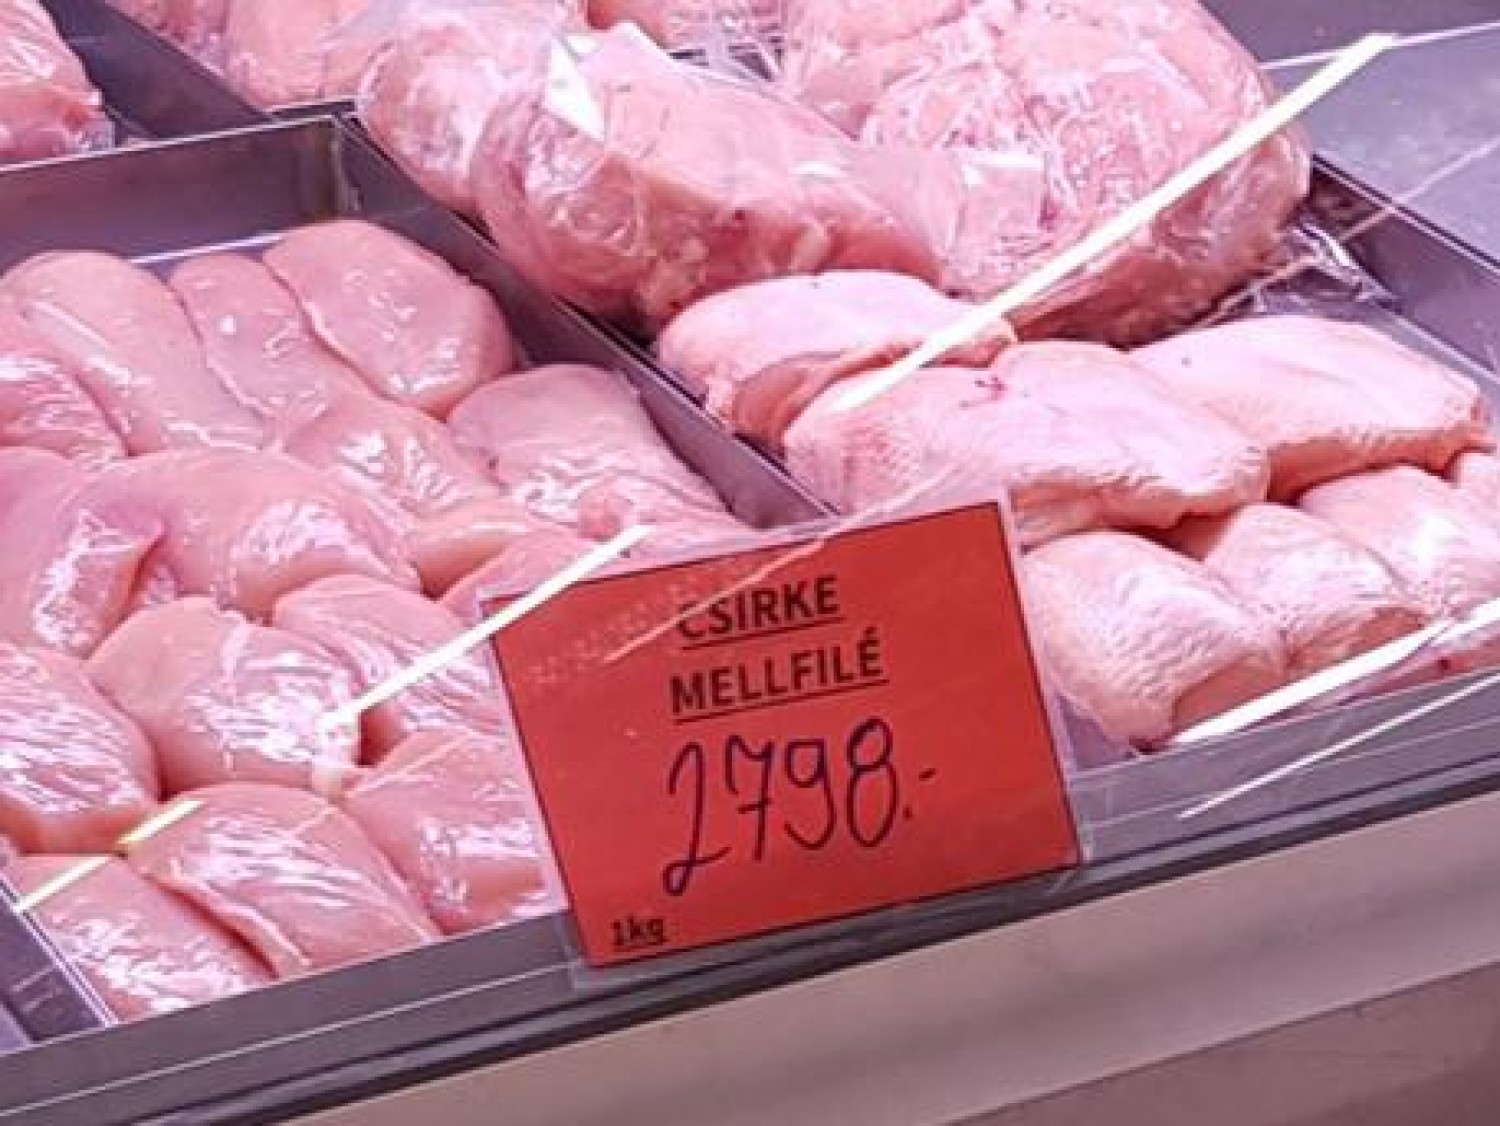 Megbüntették a piaci árust, aki drágán kínálta a csirkehúst. Na de ennyire?